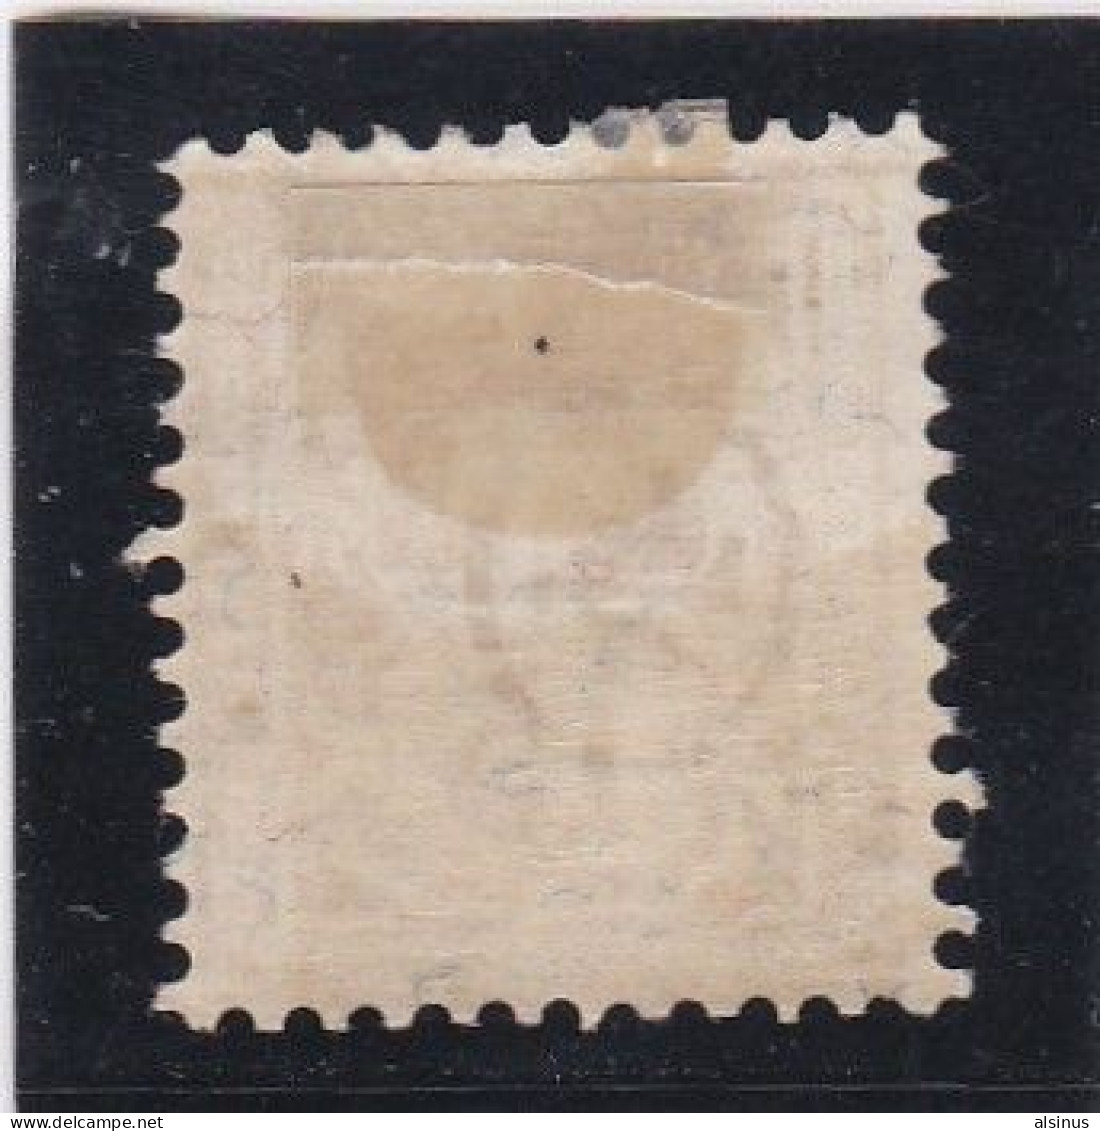 SUISSE - 1882 - CROIX FEDERALE - N° 62 - 15 C JAUNE - NEUF CHARNIERE - Ungebraucht